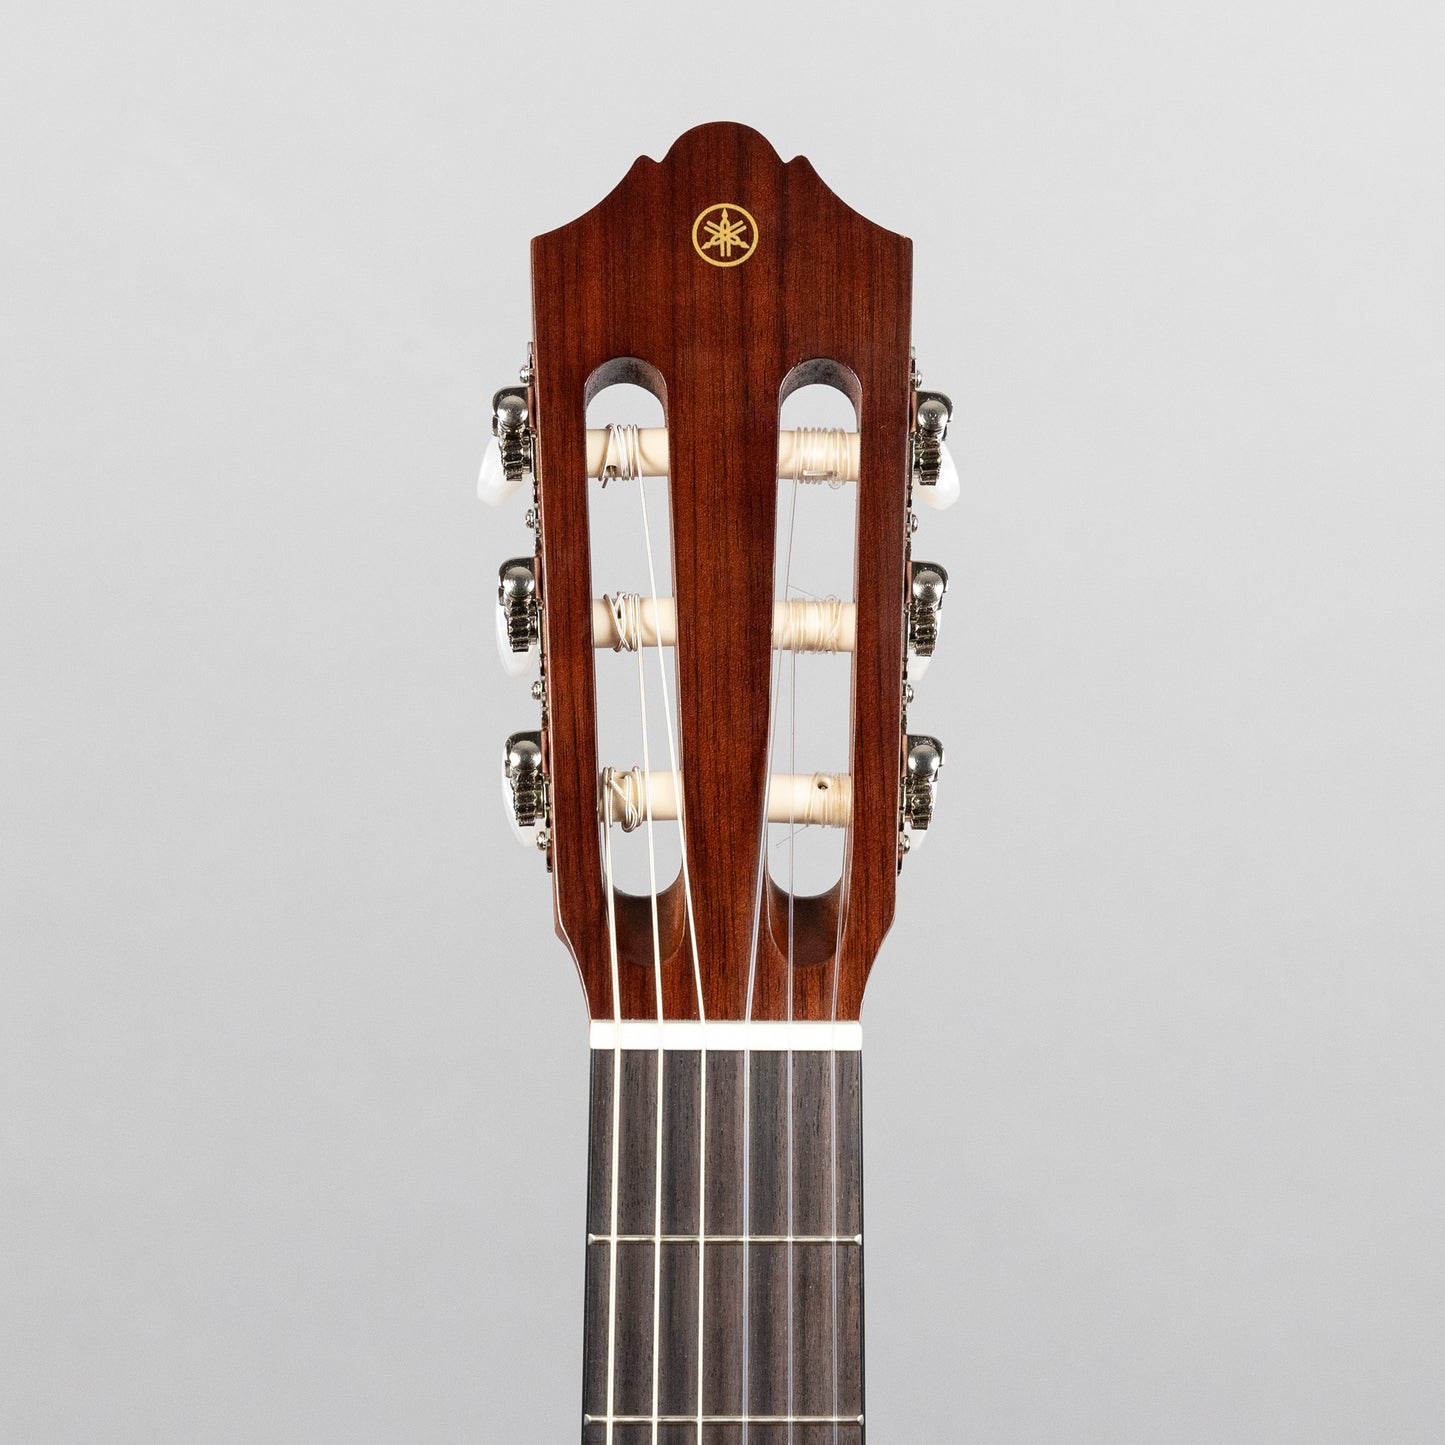 Yamaha CG122MCH Classical Guitar, Cedar Top